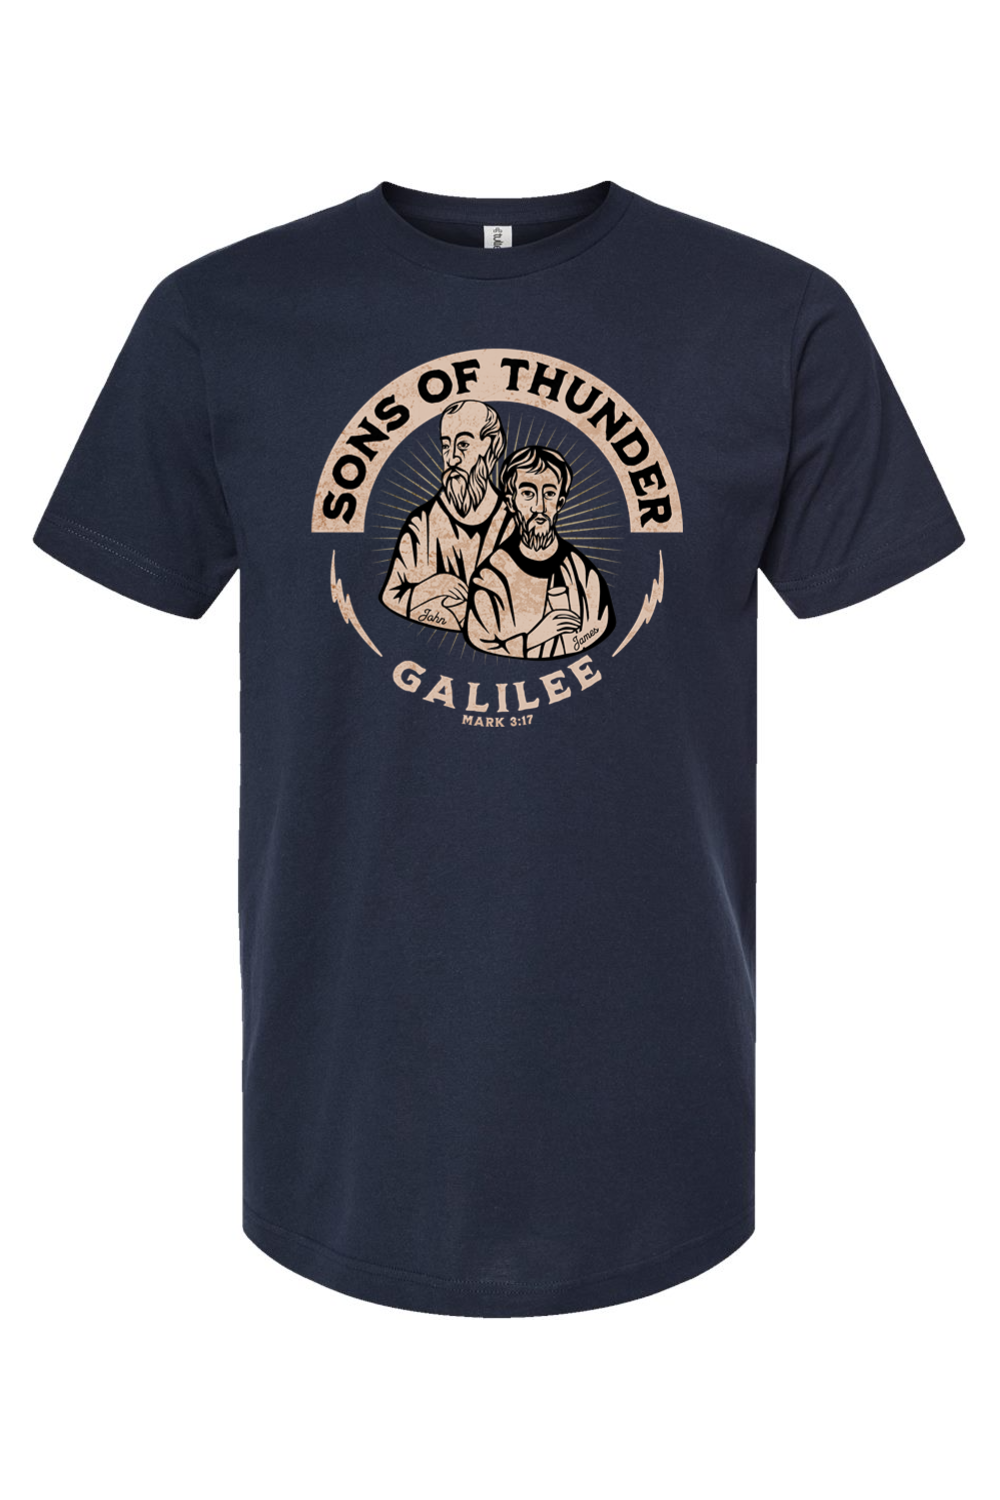 Sons of Thunder - James & John - T-Shirt